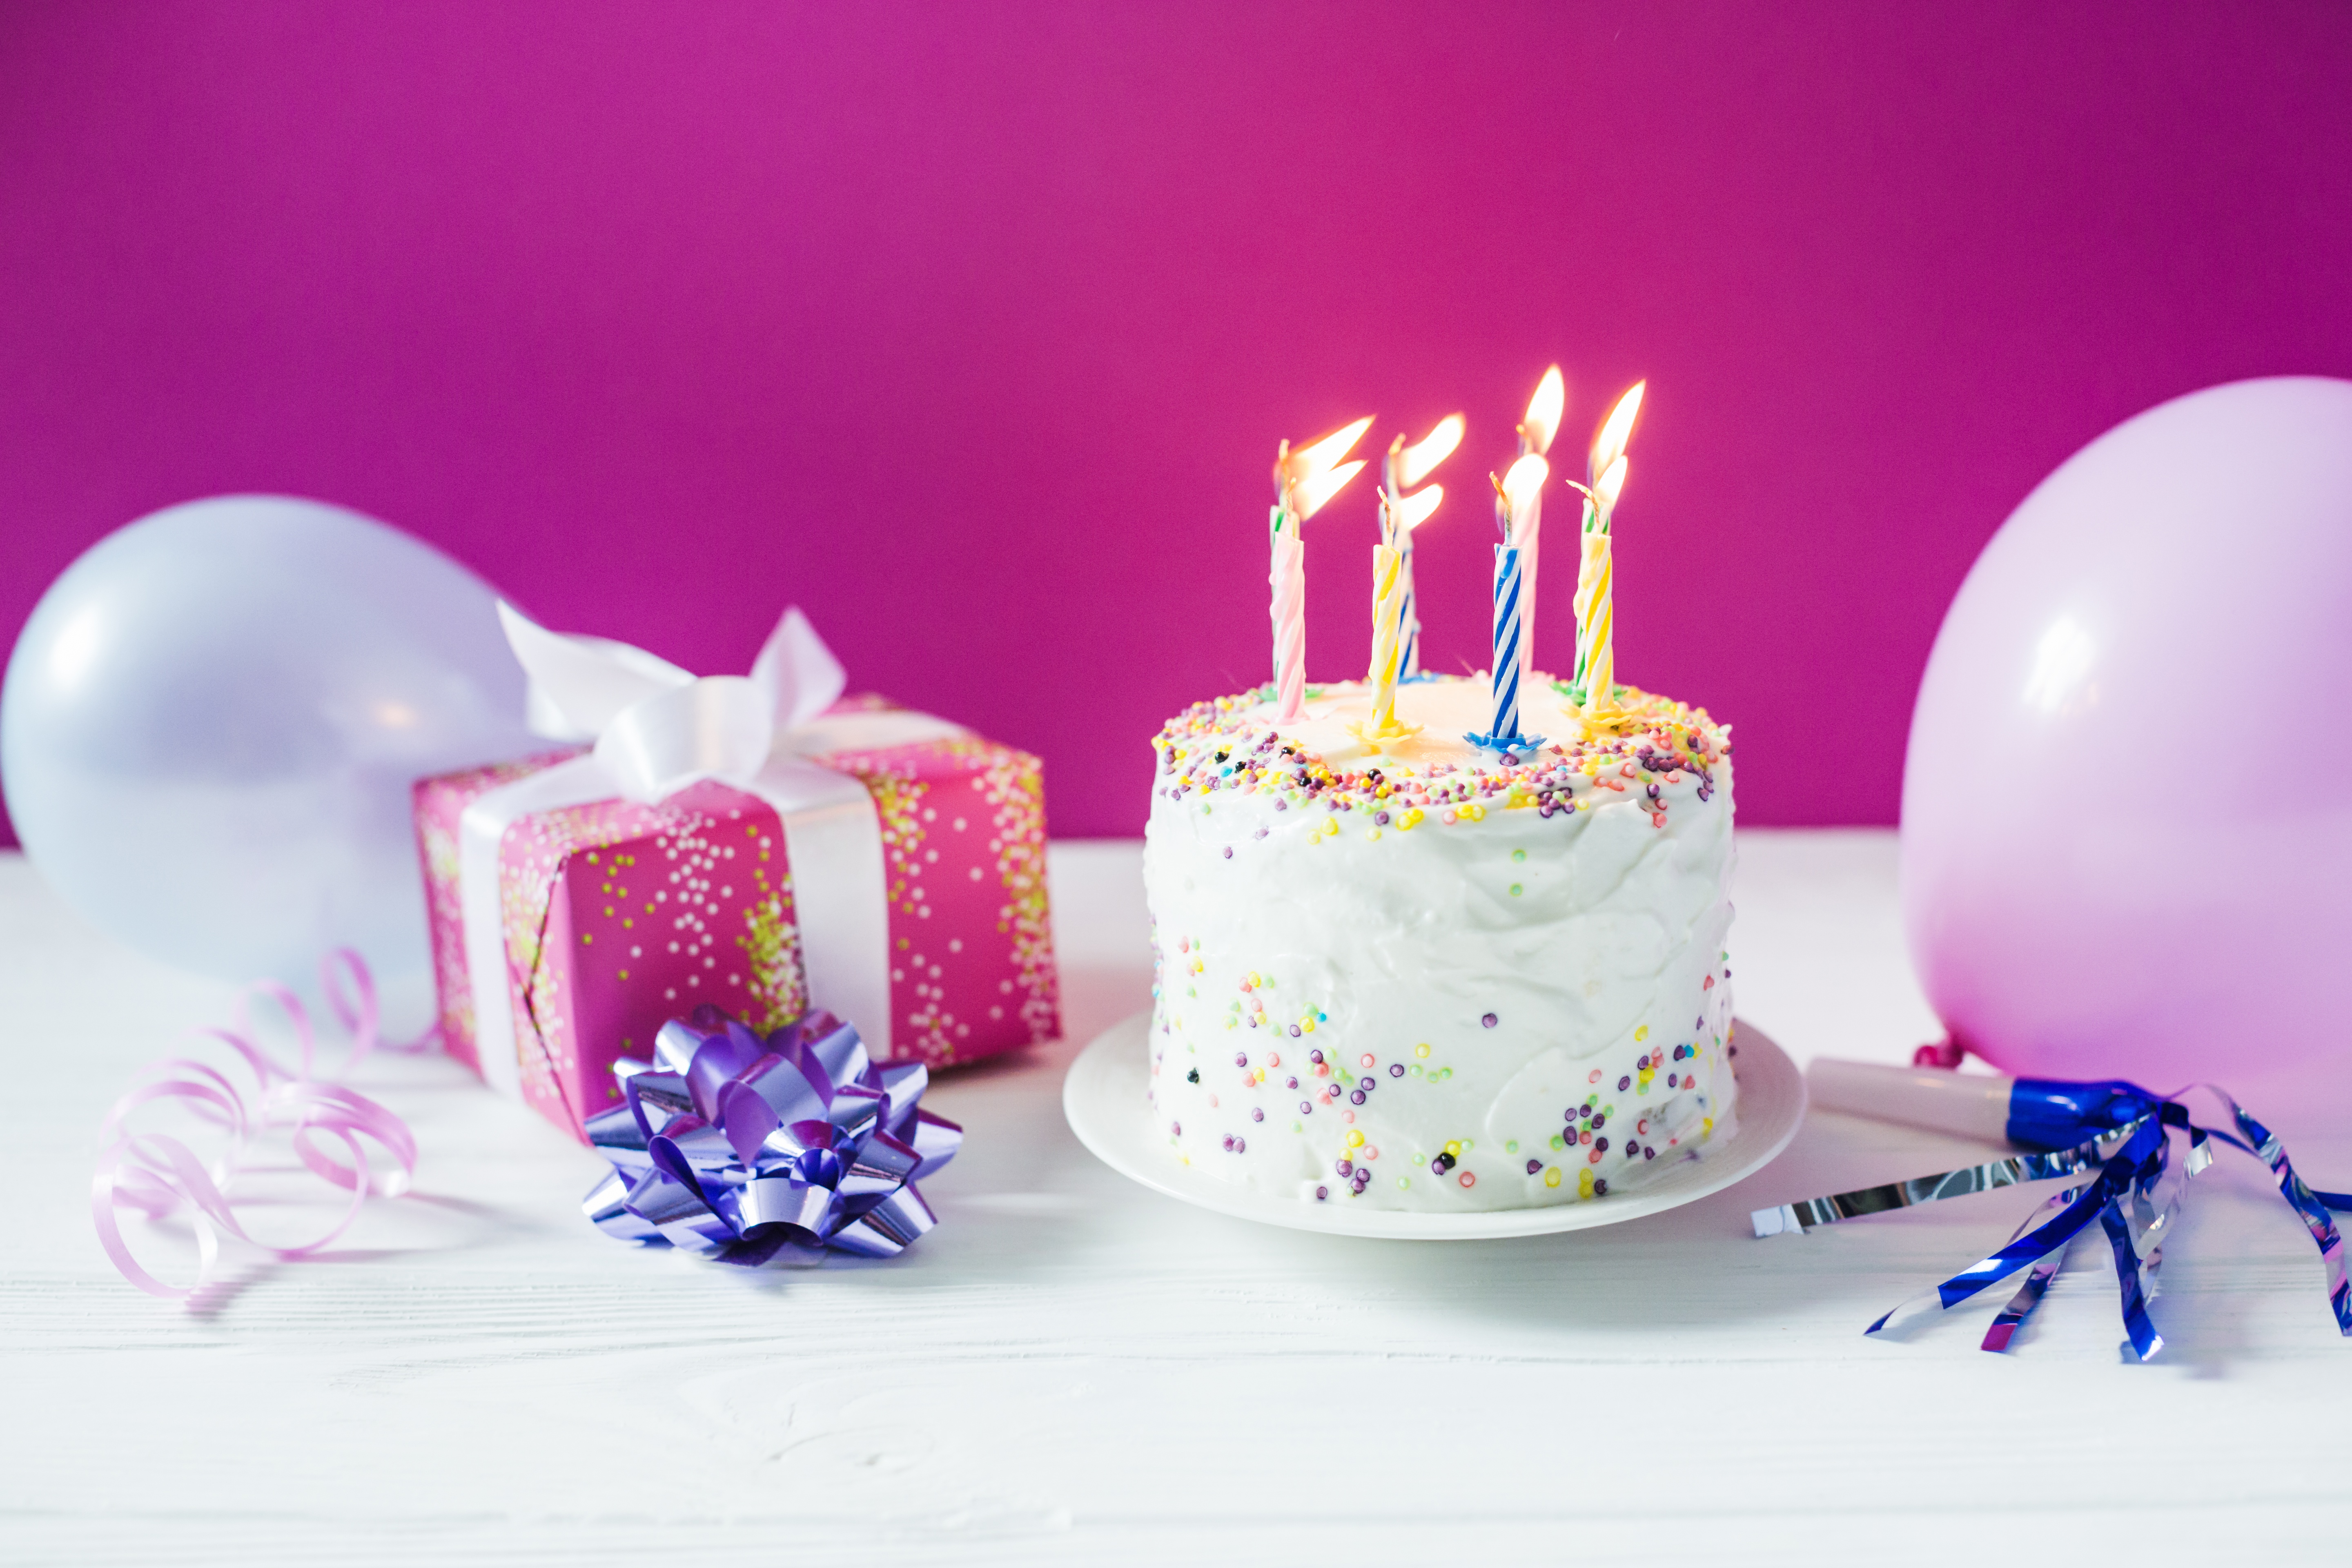 Cake candle. Красивый торт со свечами. Тортик с днем рождения. Открытка торт со свечами. Красивые тортики на день рождения.